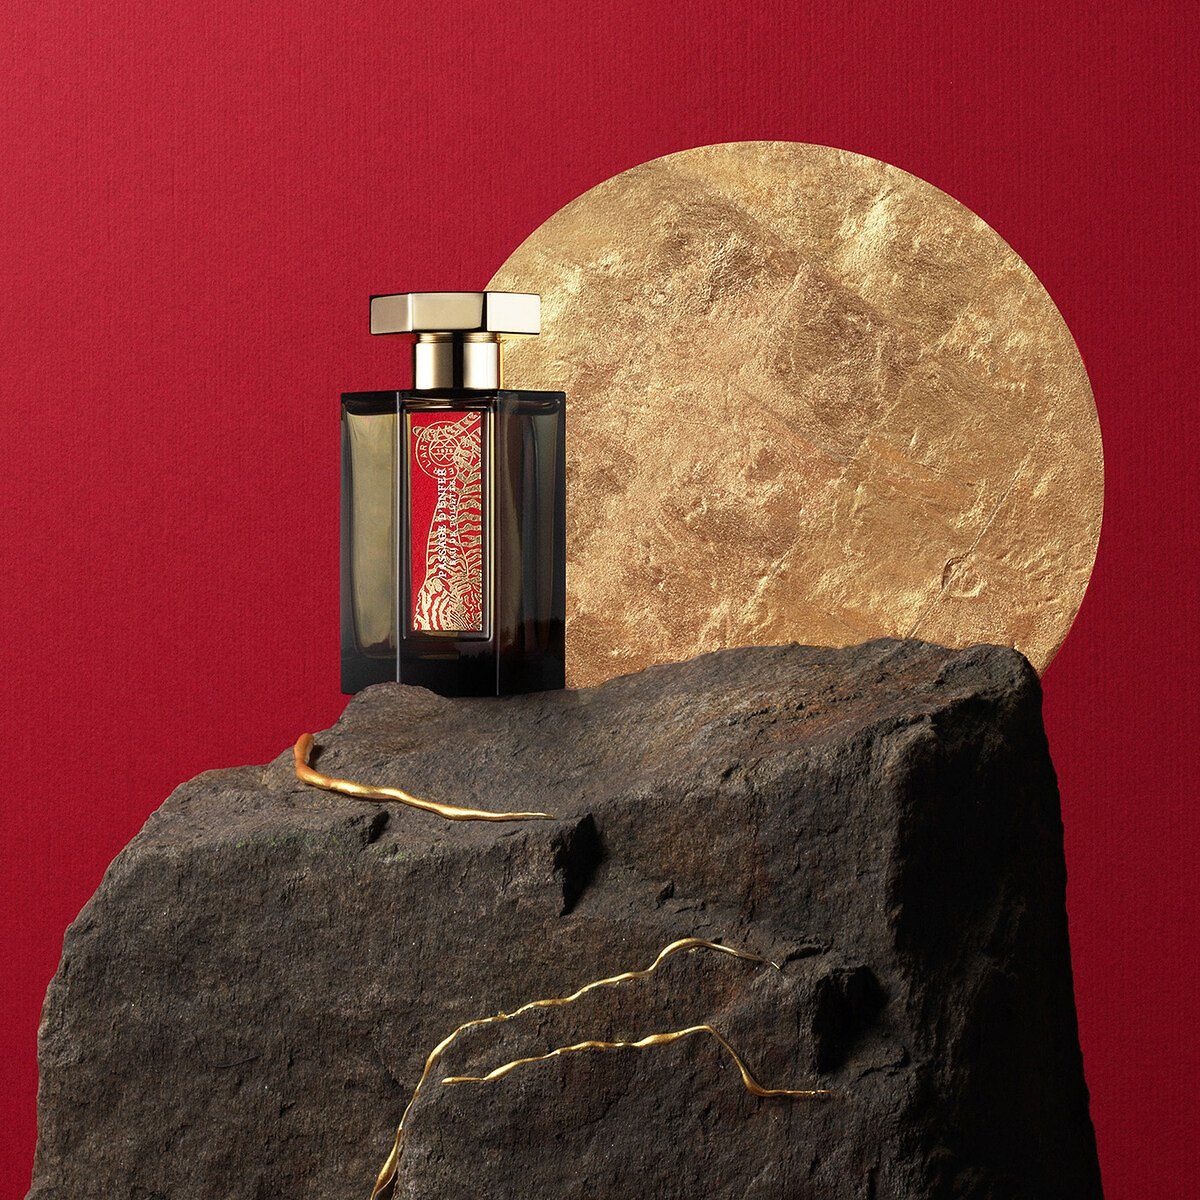 L’Artisan Parfumeur, Passage d’Enfer Limited Edition